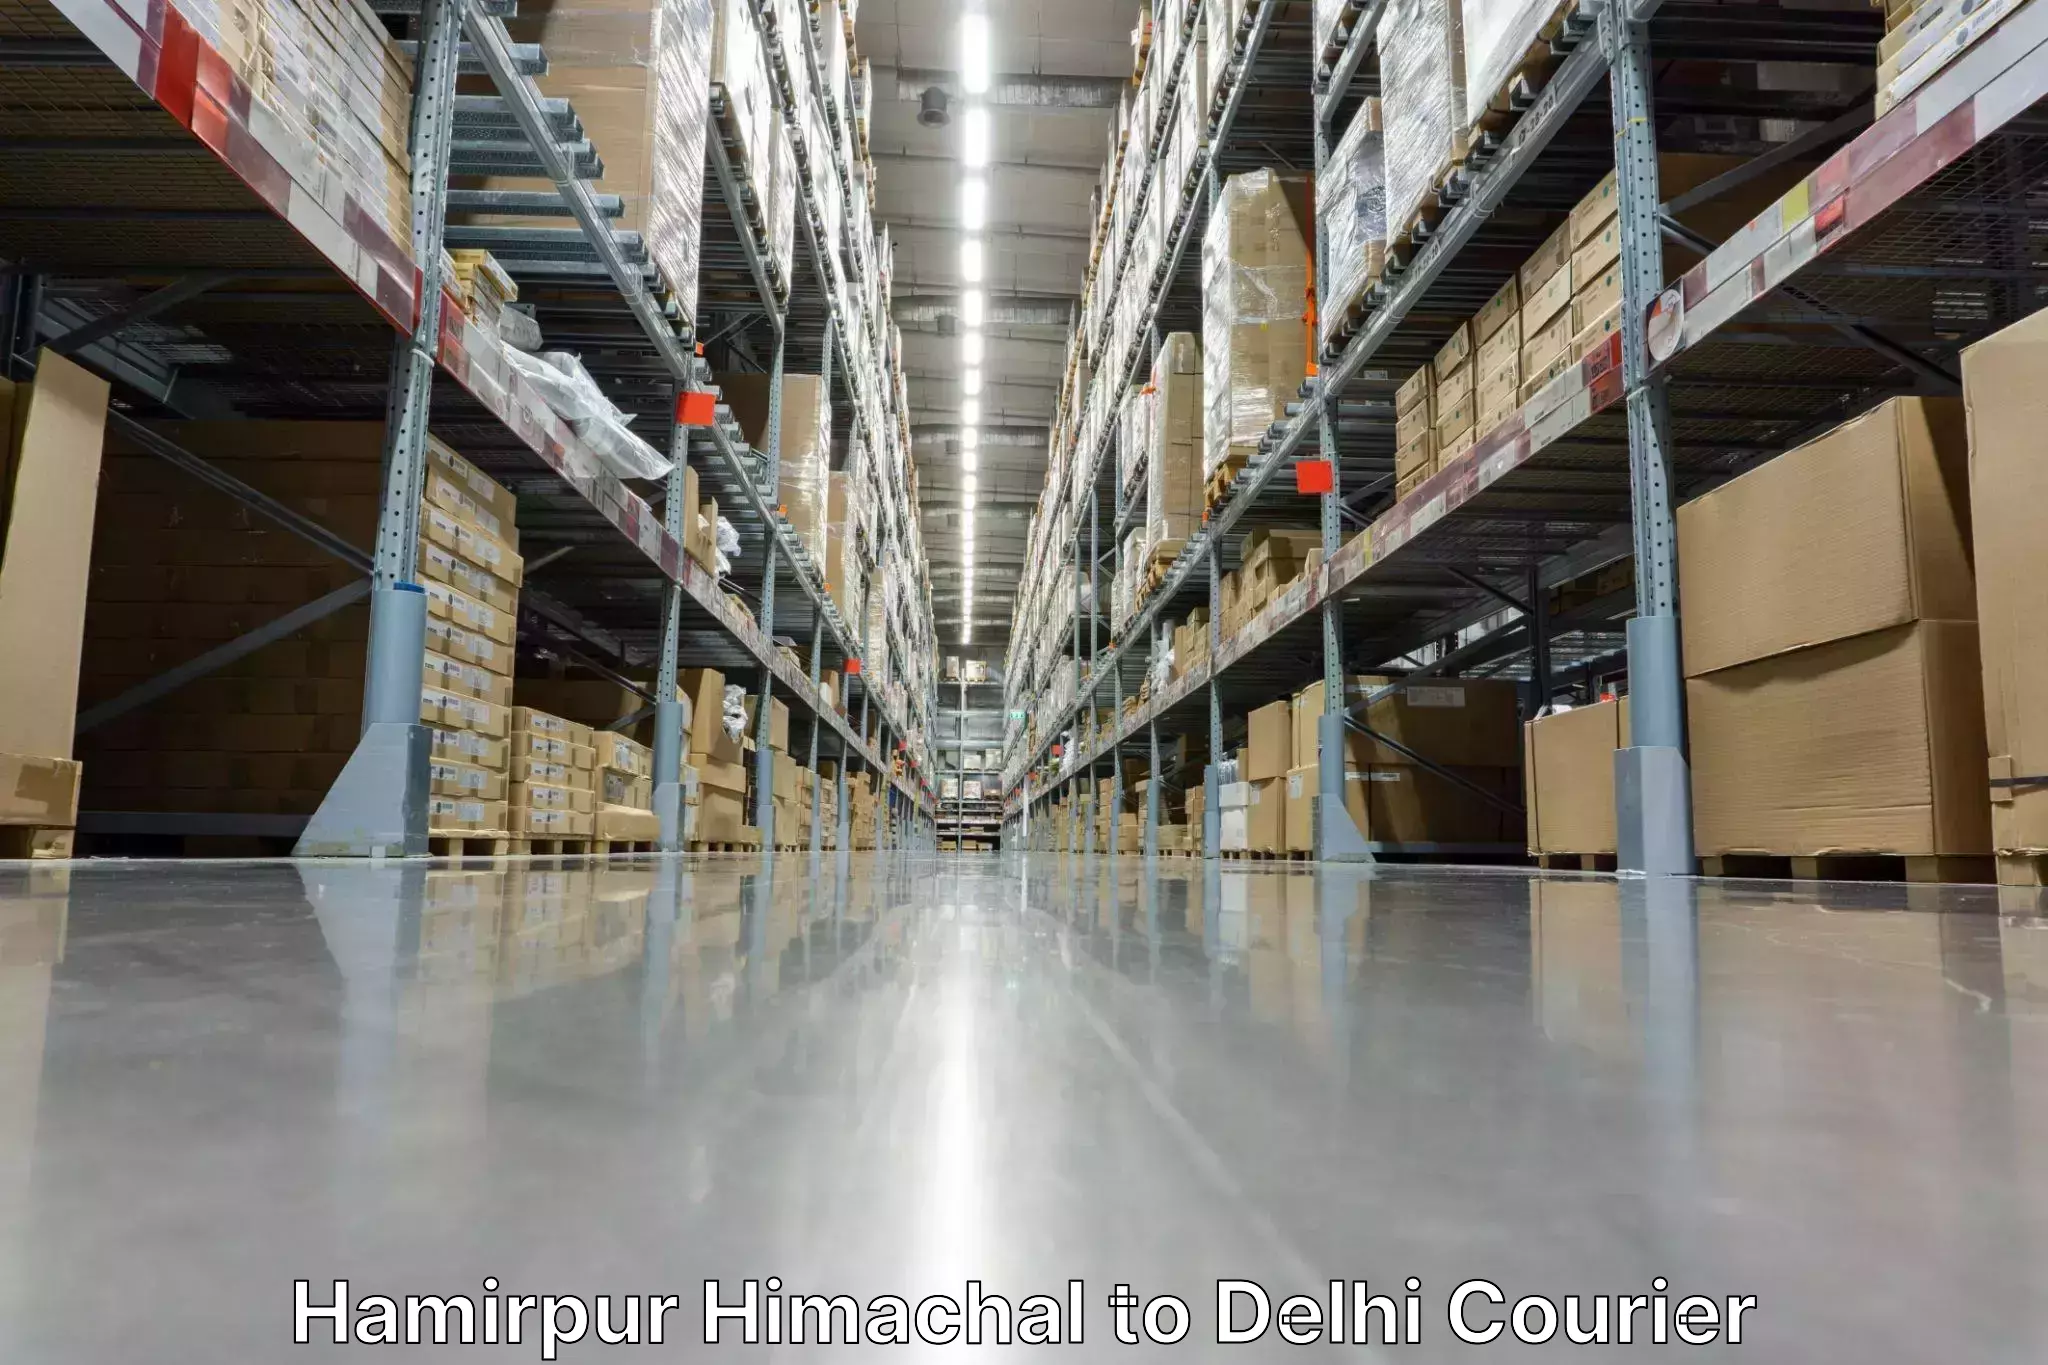 Express delivery capabilities Hamirpur Himachal to IIT Delhi